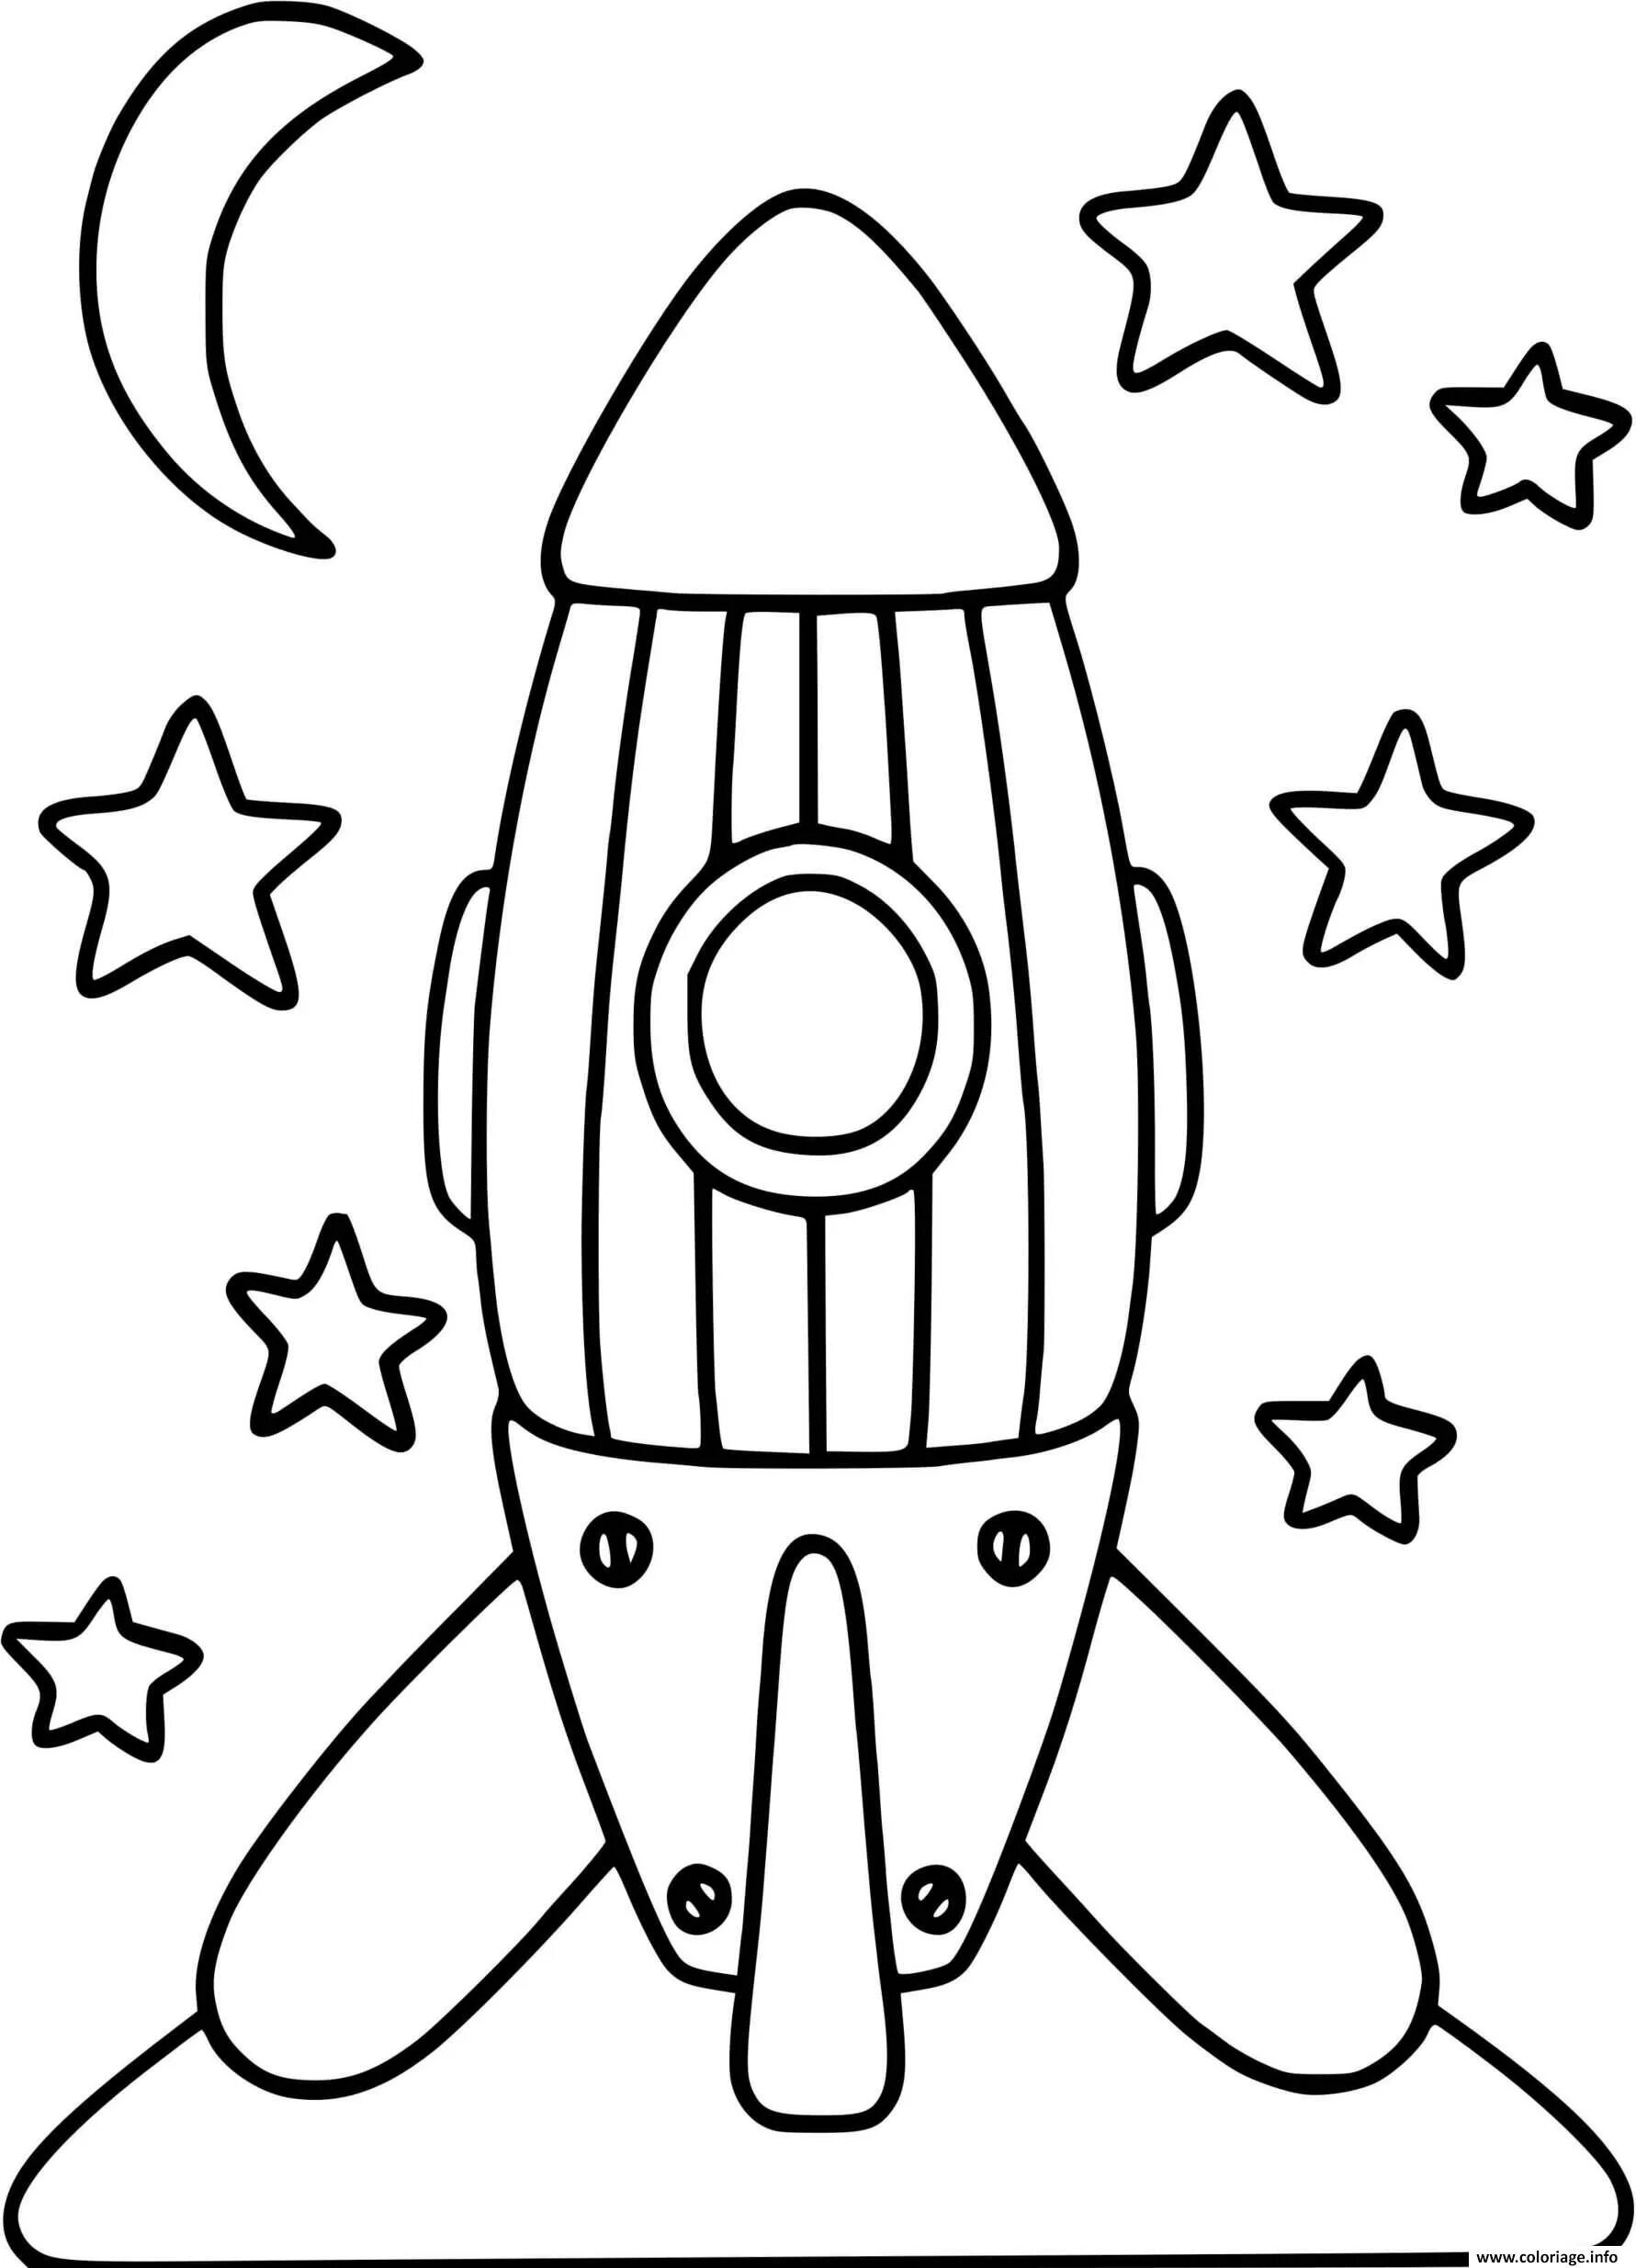 Ракета раскрасить. Ракета раскраска. Ракета раскраска для детей. Космическая ракета раскраска. Раскраска ракета в космосе для детей.